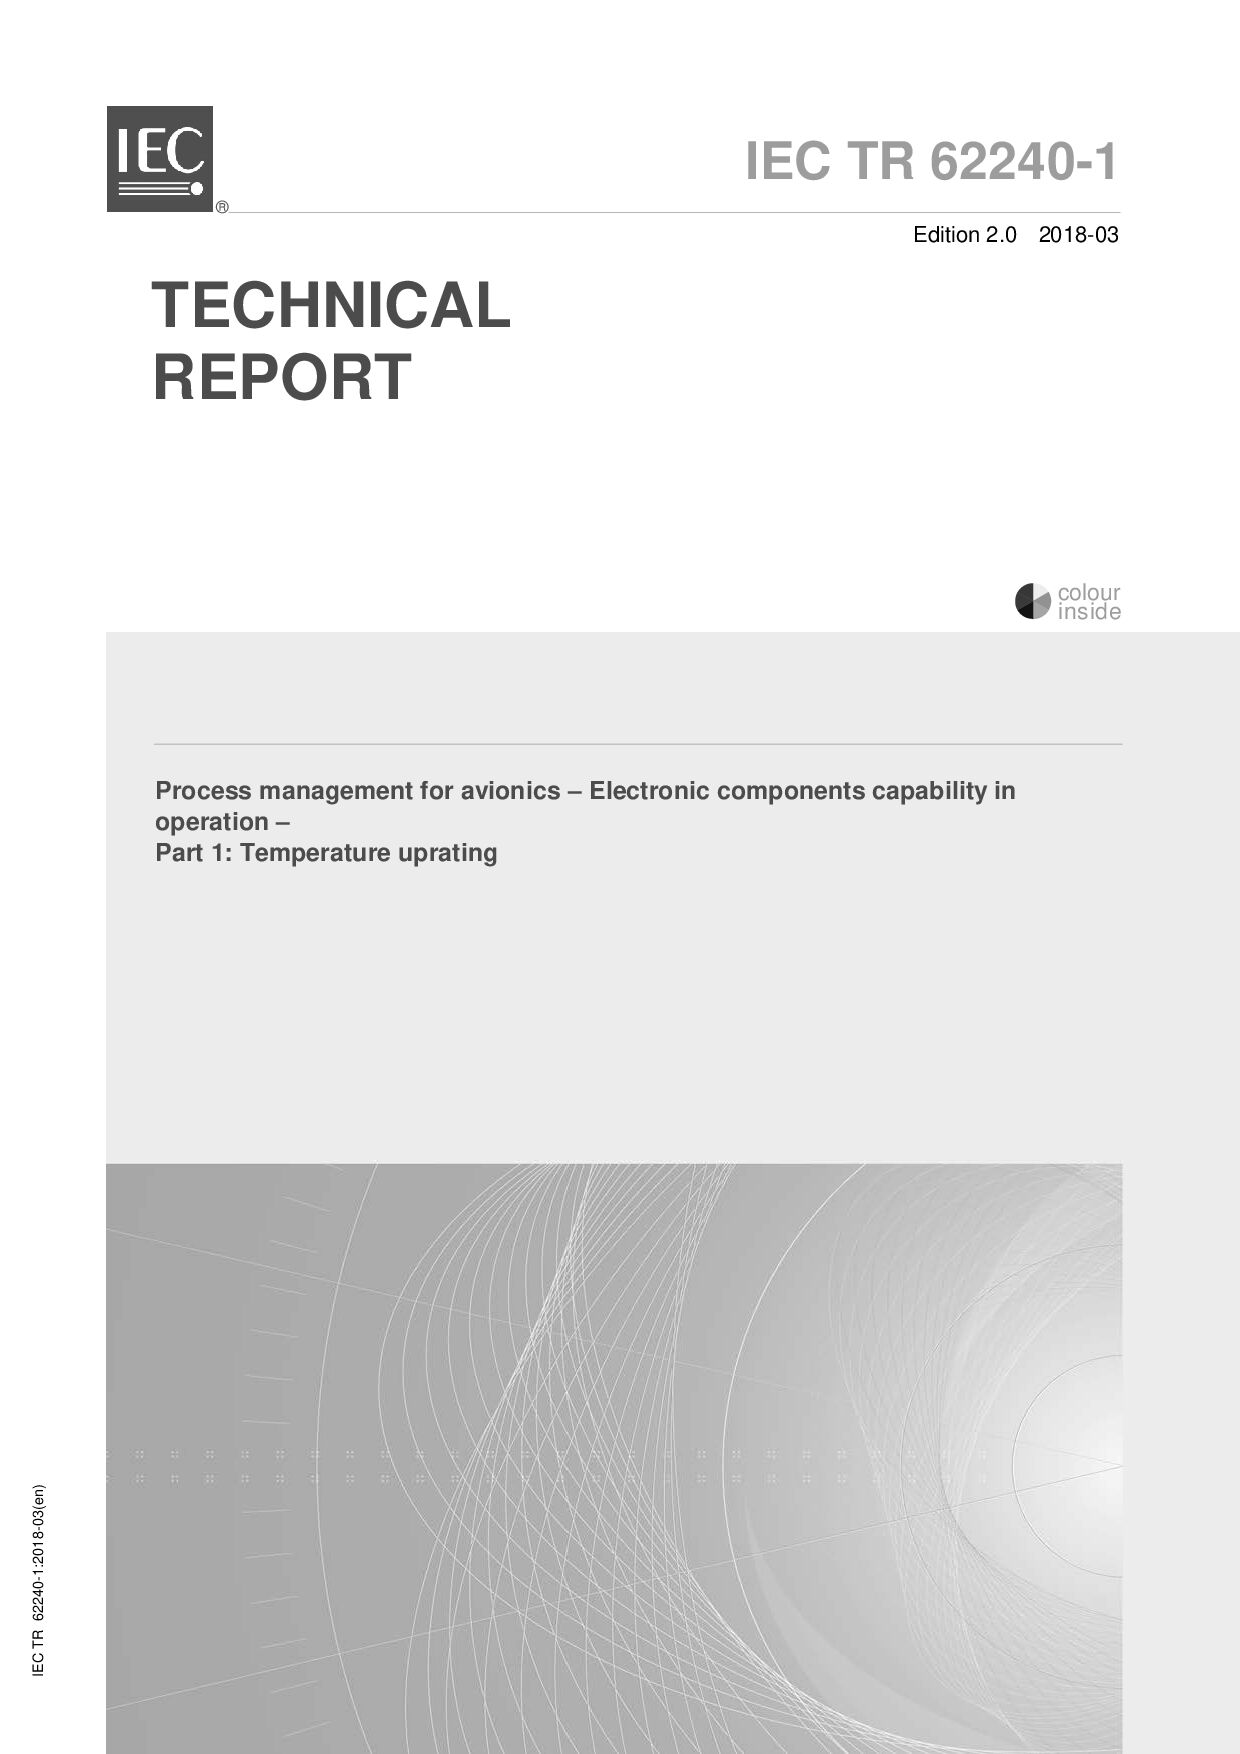 IEC TR 62240-1:2018